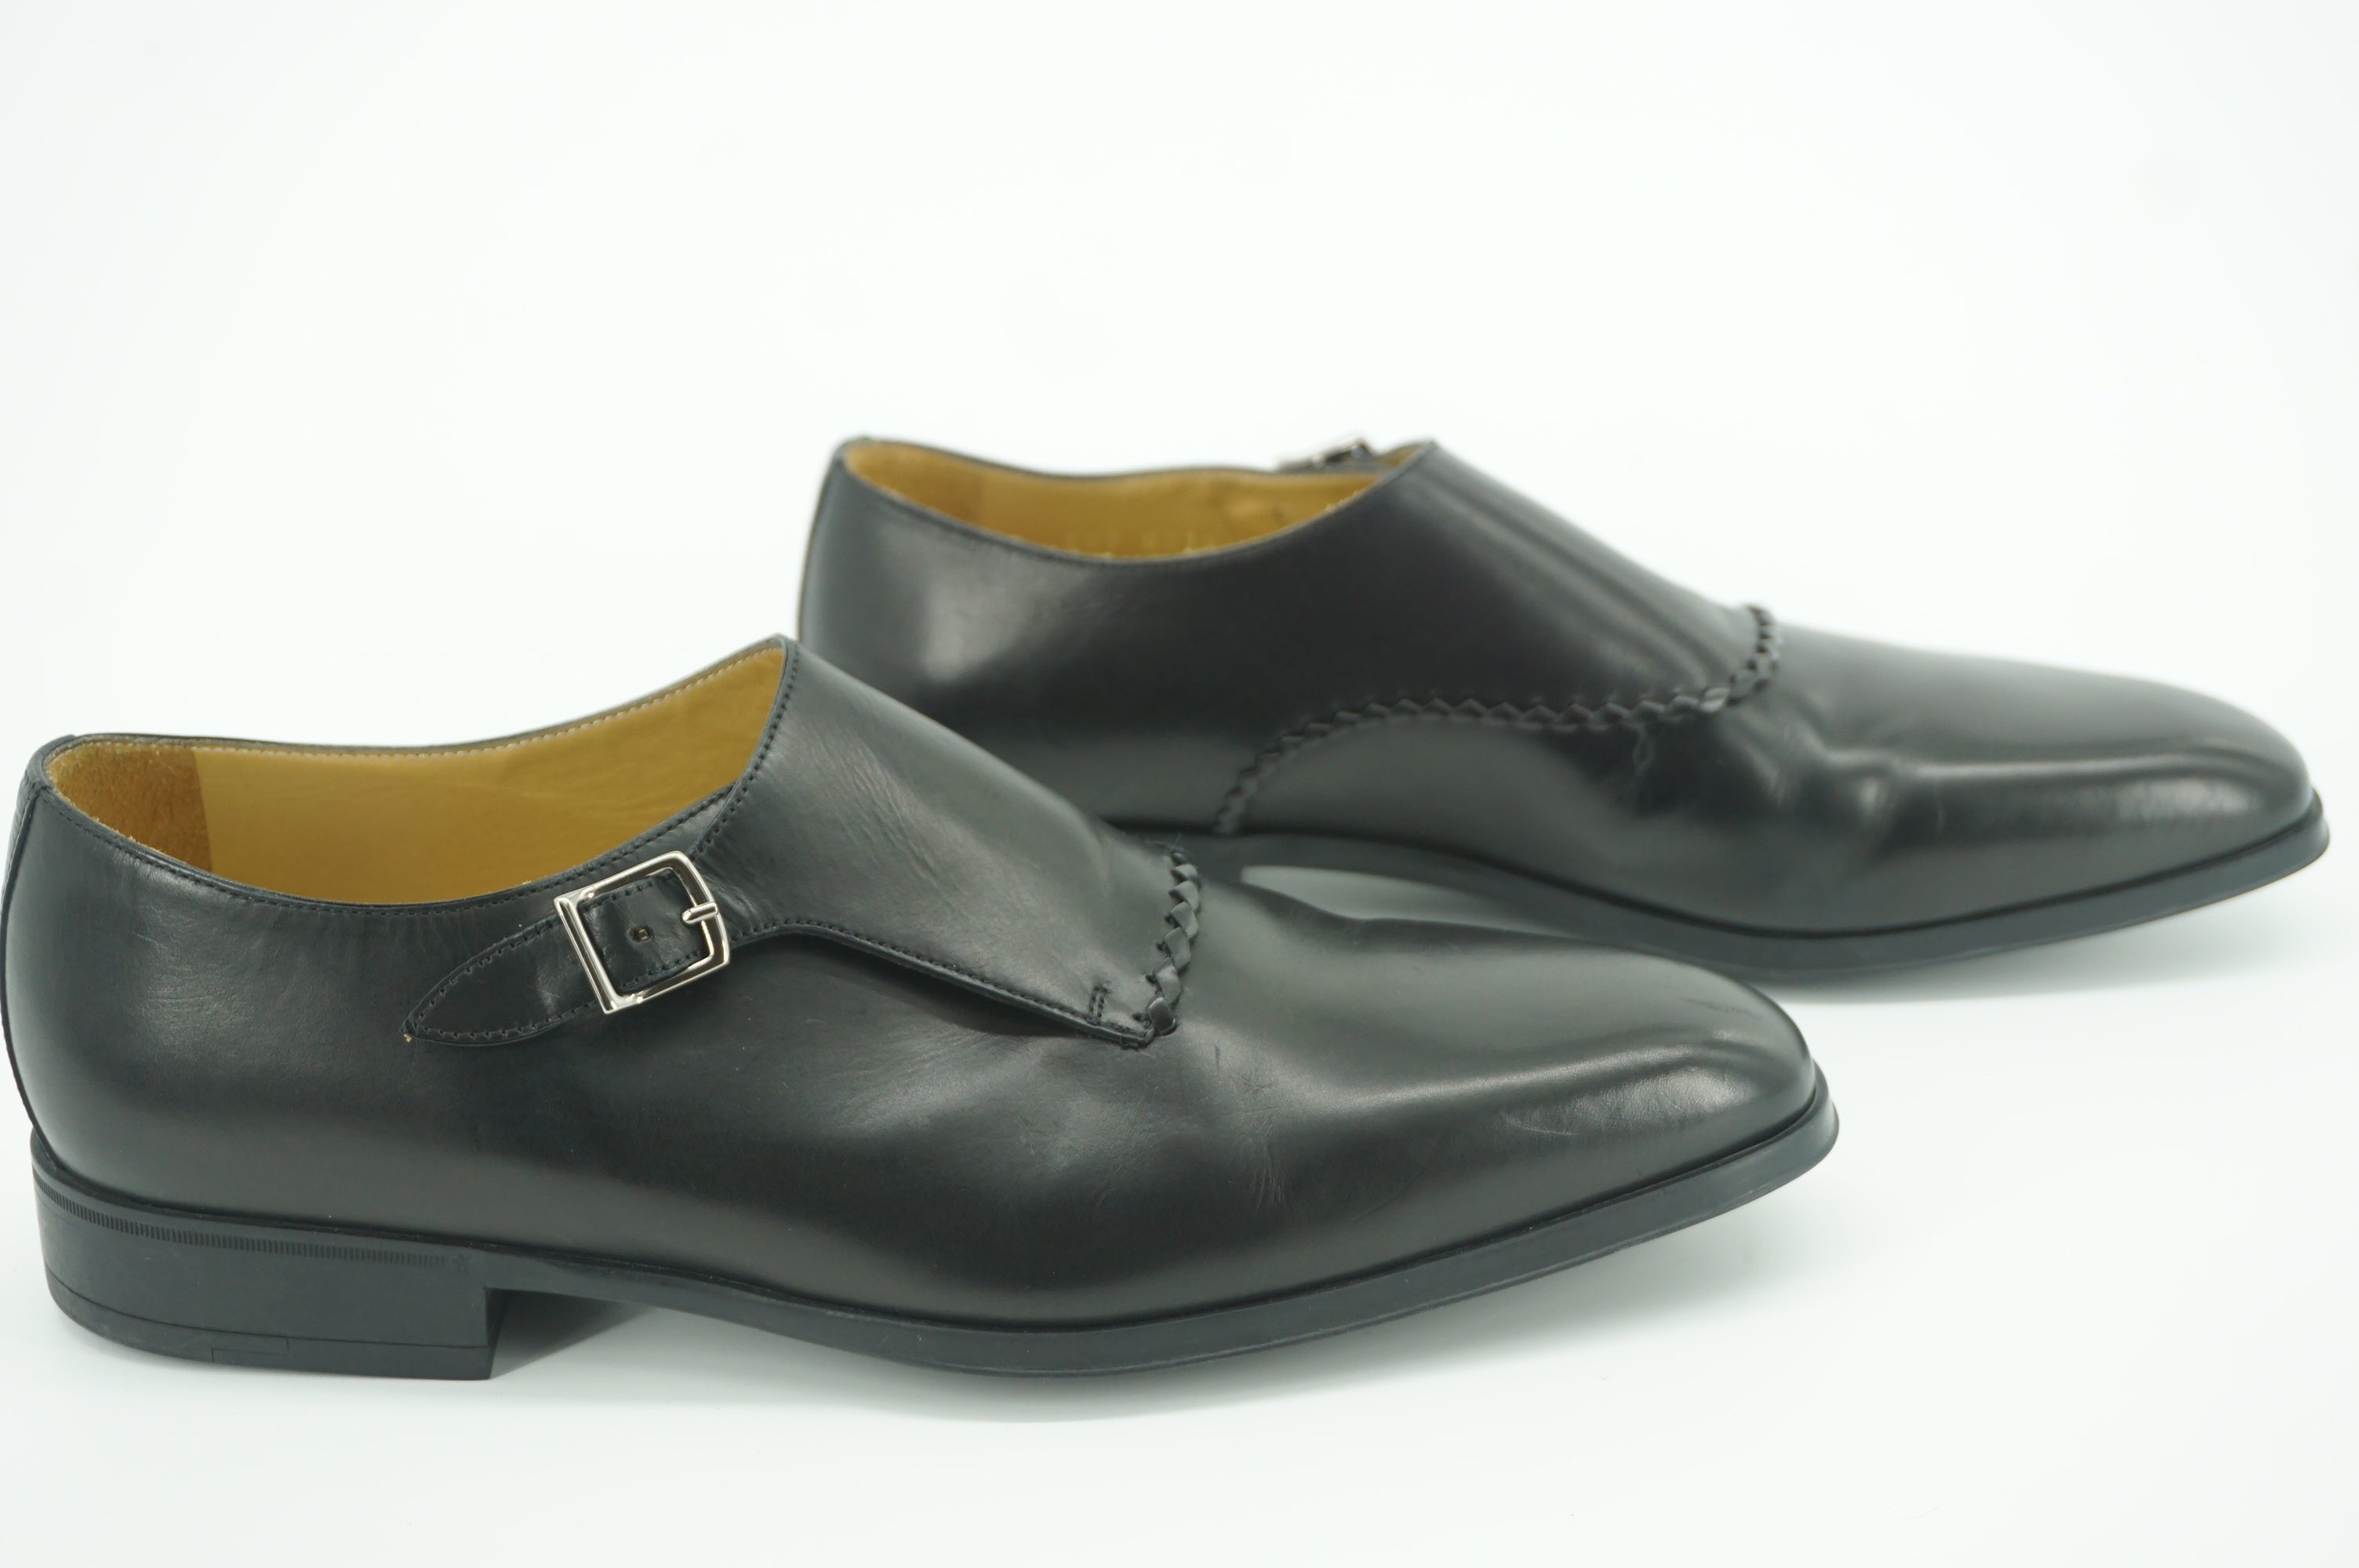 Sutor Mantellassi Marzio Black Leather Monk Strap Loafers Size 10 slip on $565